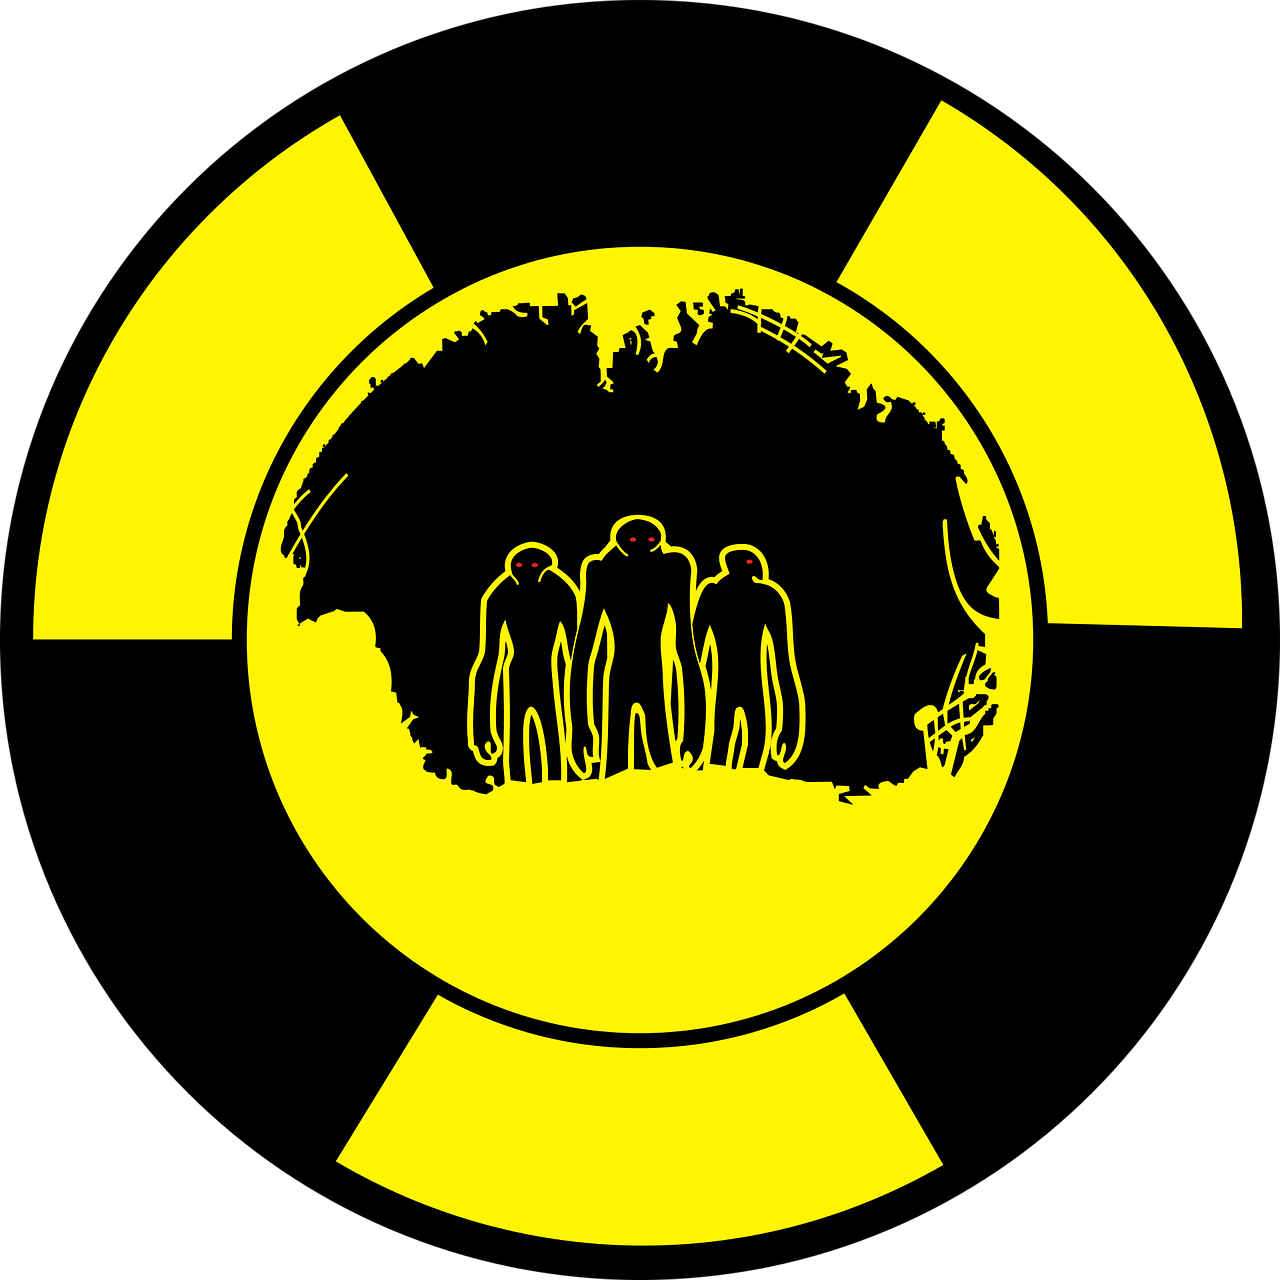 Radiacija, Personažai, Tunelis, Sunaikinimas, Radioaktyvumas, Siluetai, Monstras, Laužas, Šiukšlių, Mediena